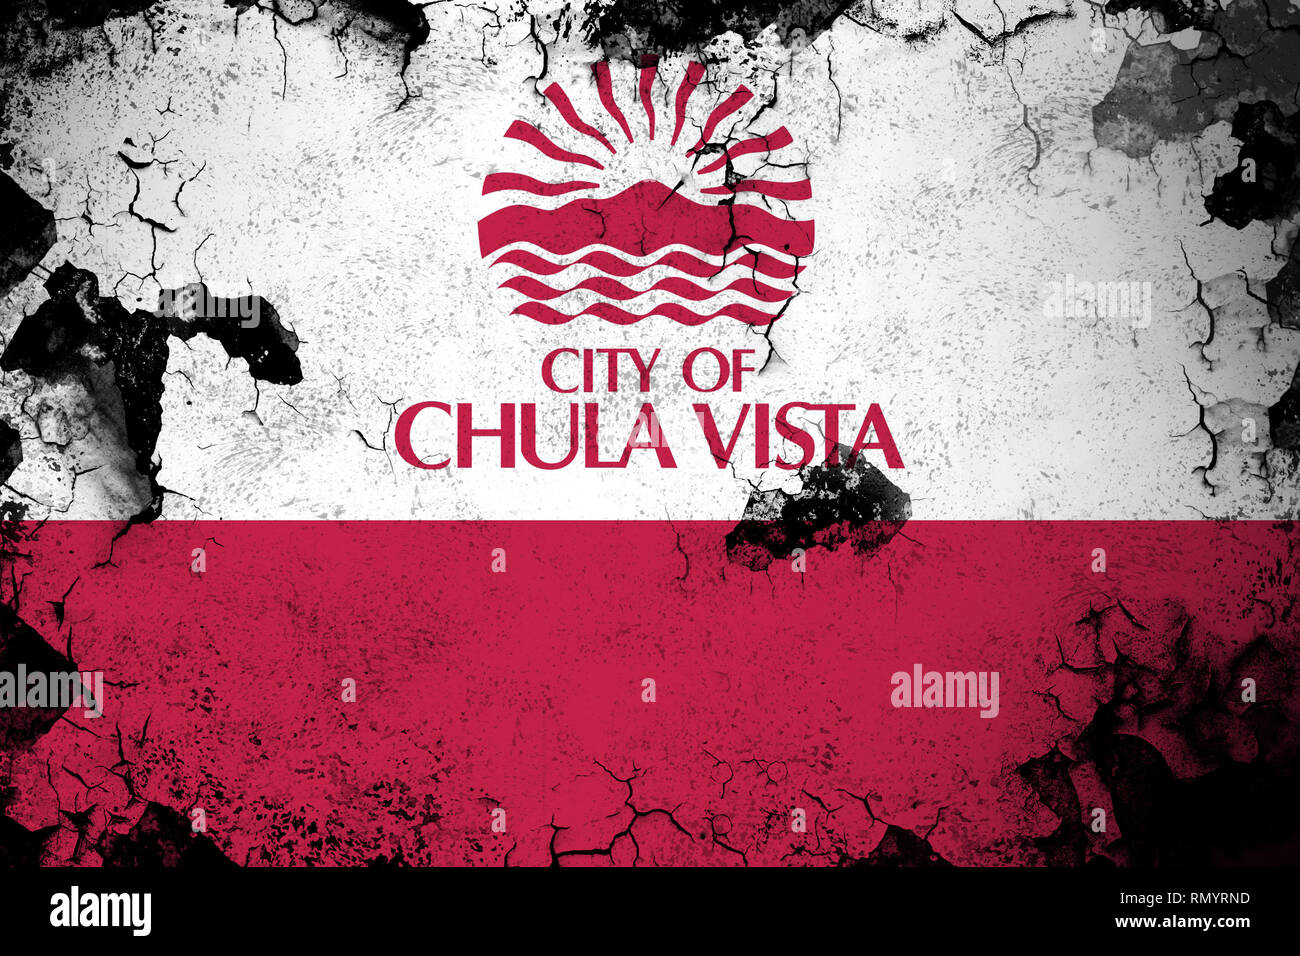 Chula Vista, Californie drapeau sale grunge et illustration. Parfait pour les fins de l'arrière-plan ou de texture. Banque D'Images